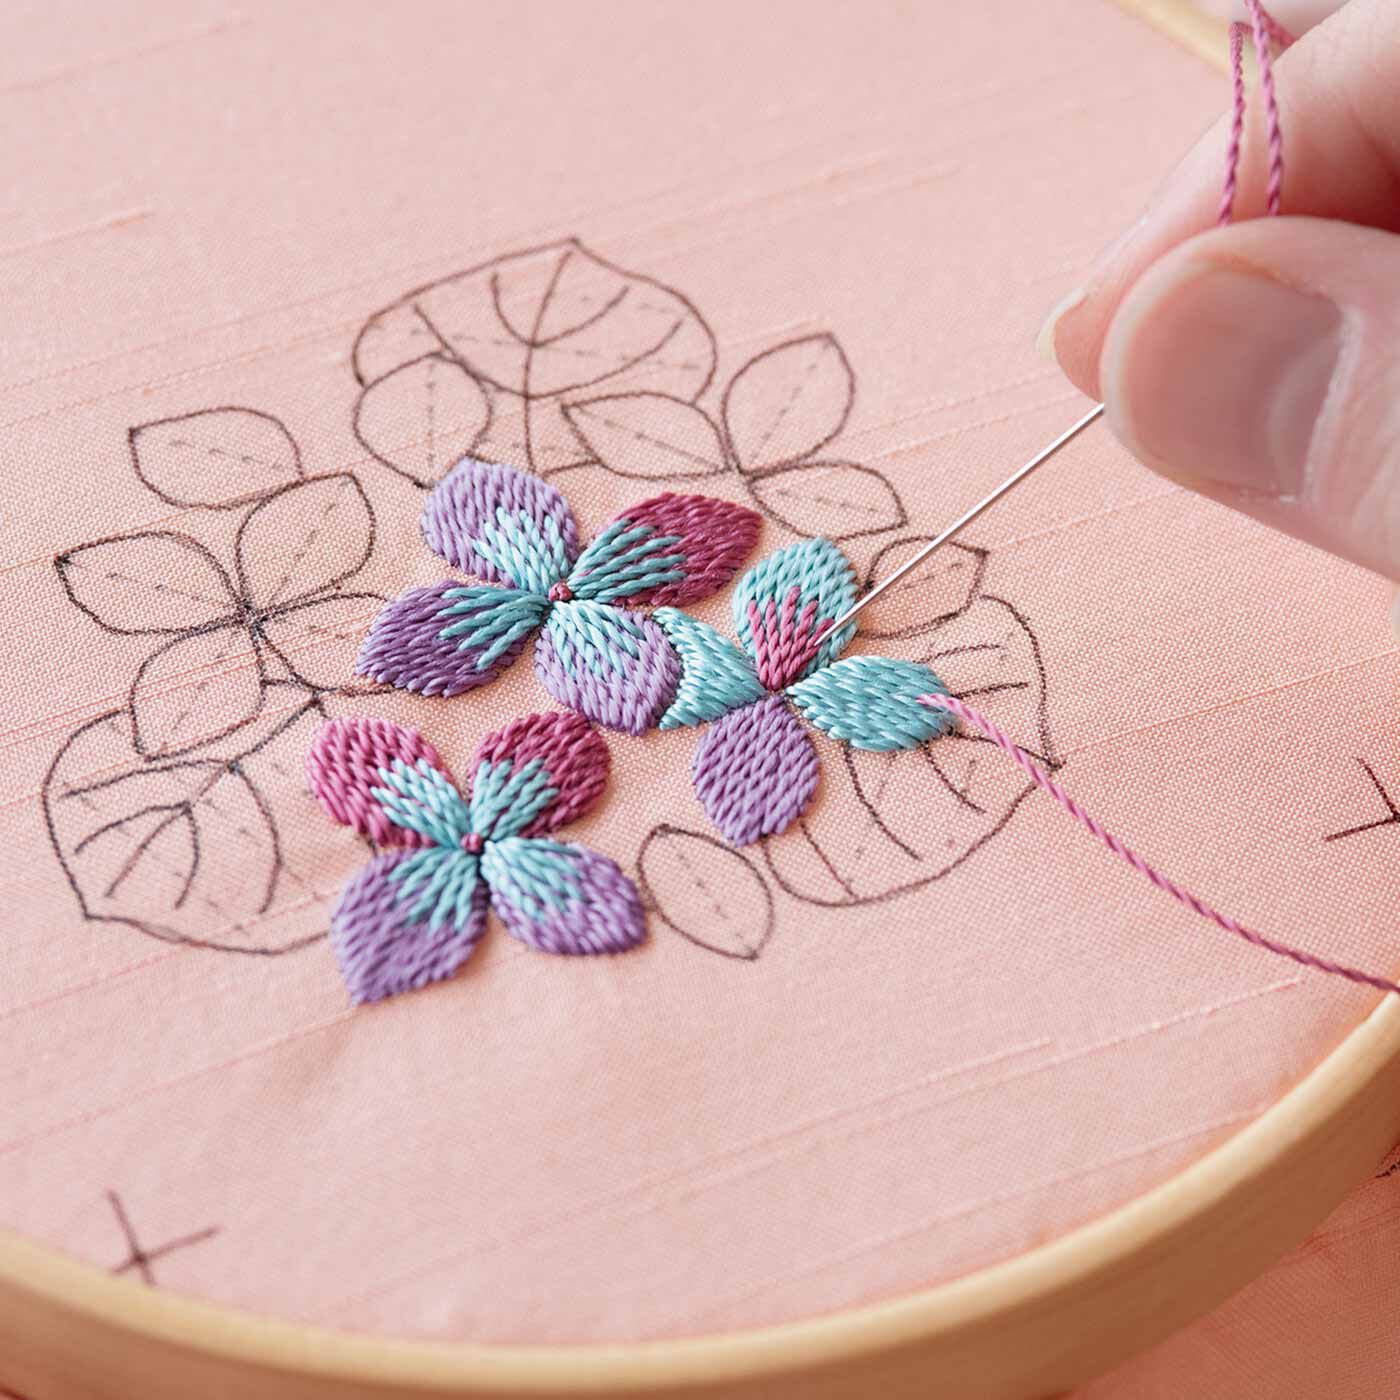 クチュリエ|日本刺しゅうにあこがれて　絹糸の優美な輝き文様フレームの会|ふっくらと浮かびあがる絹糸の光沢は、日本刺しゅうならでは。